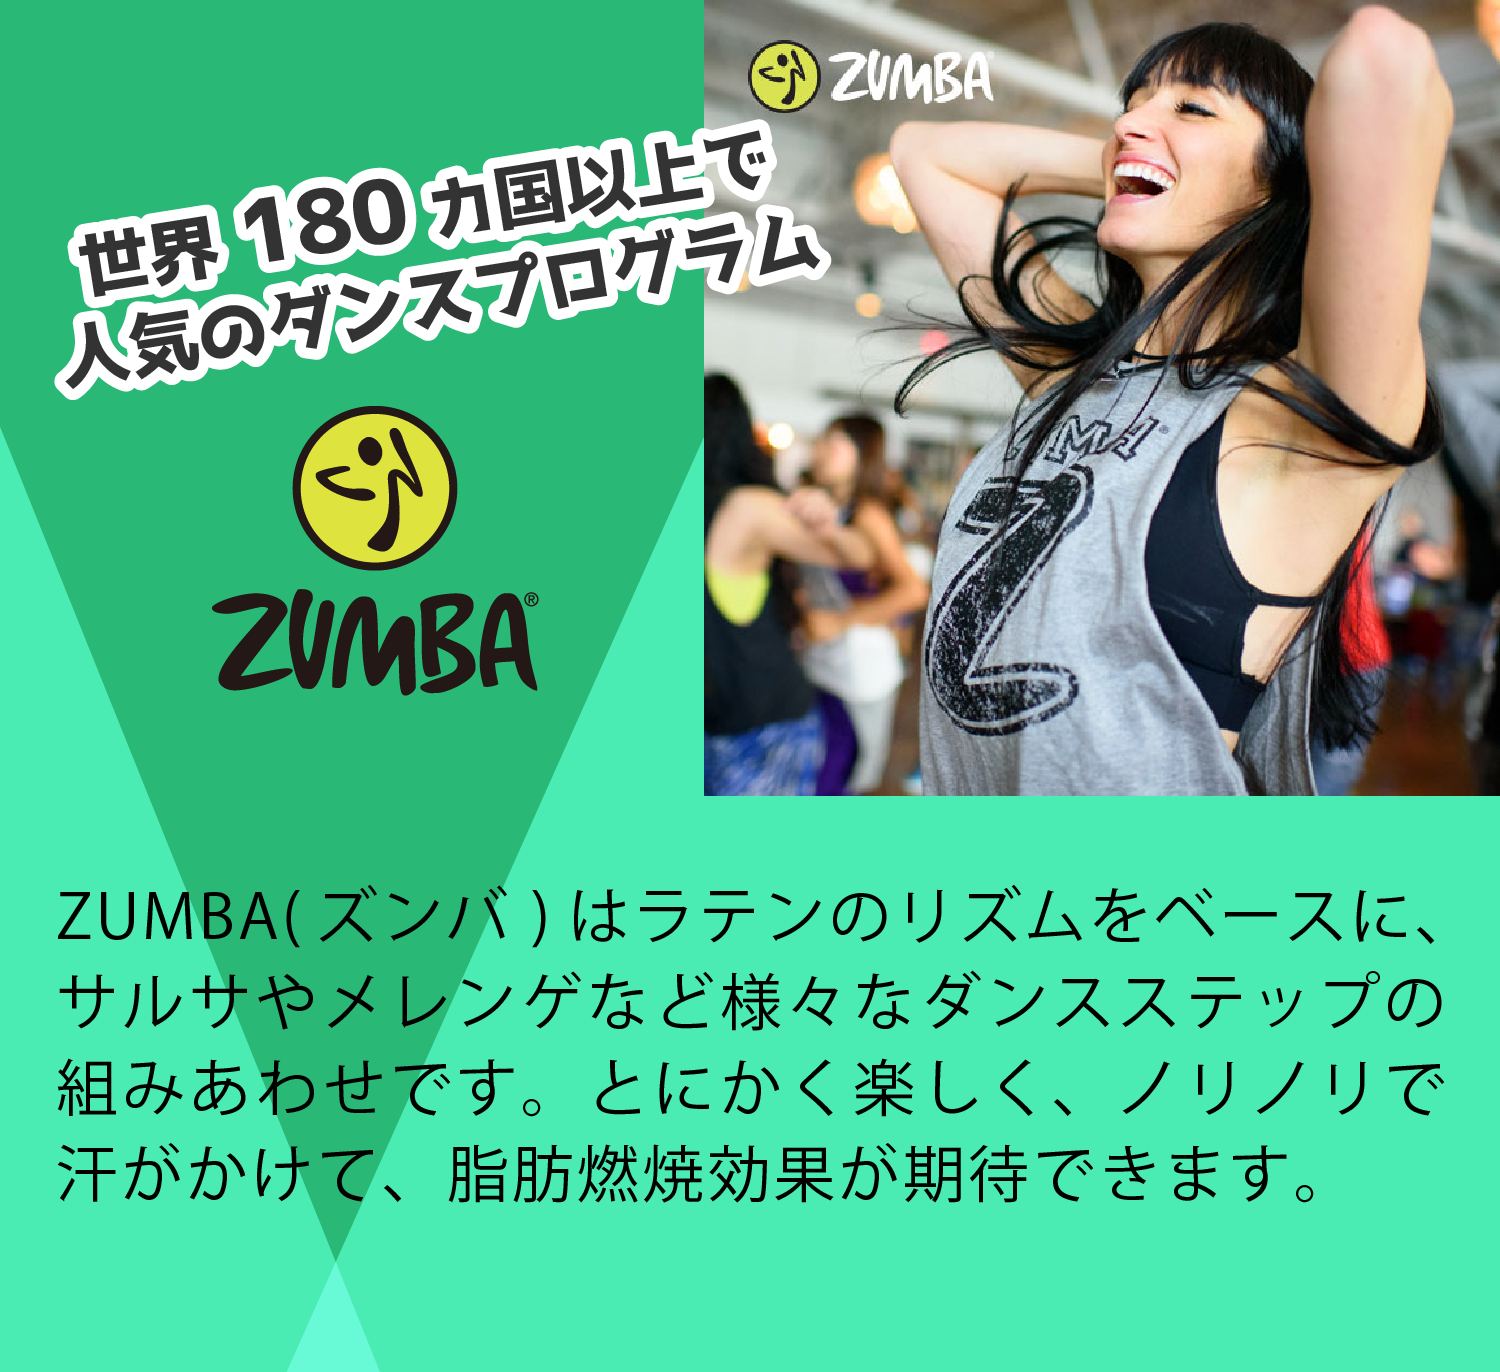 世界180ヵ国以上で人気のダンスプログラム ZUMBA